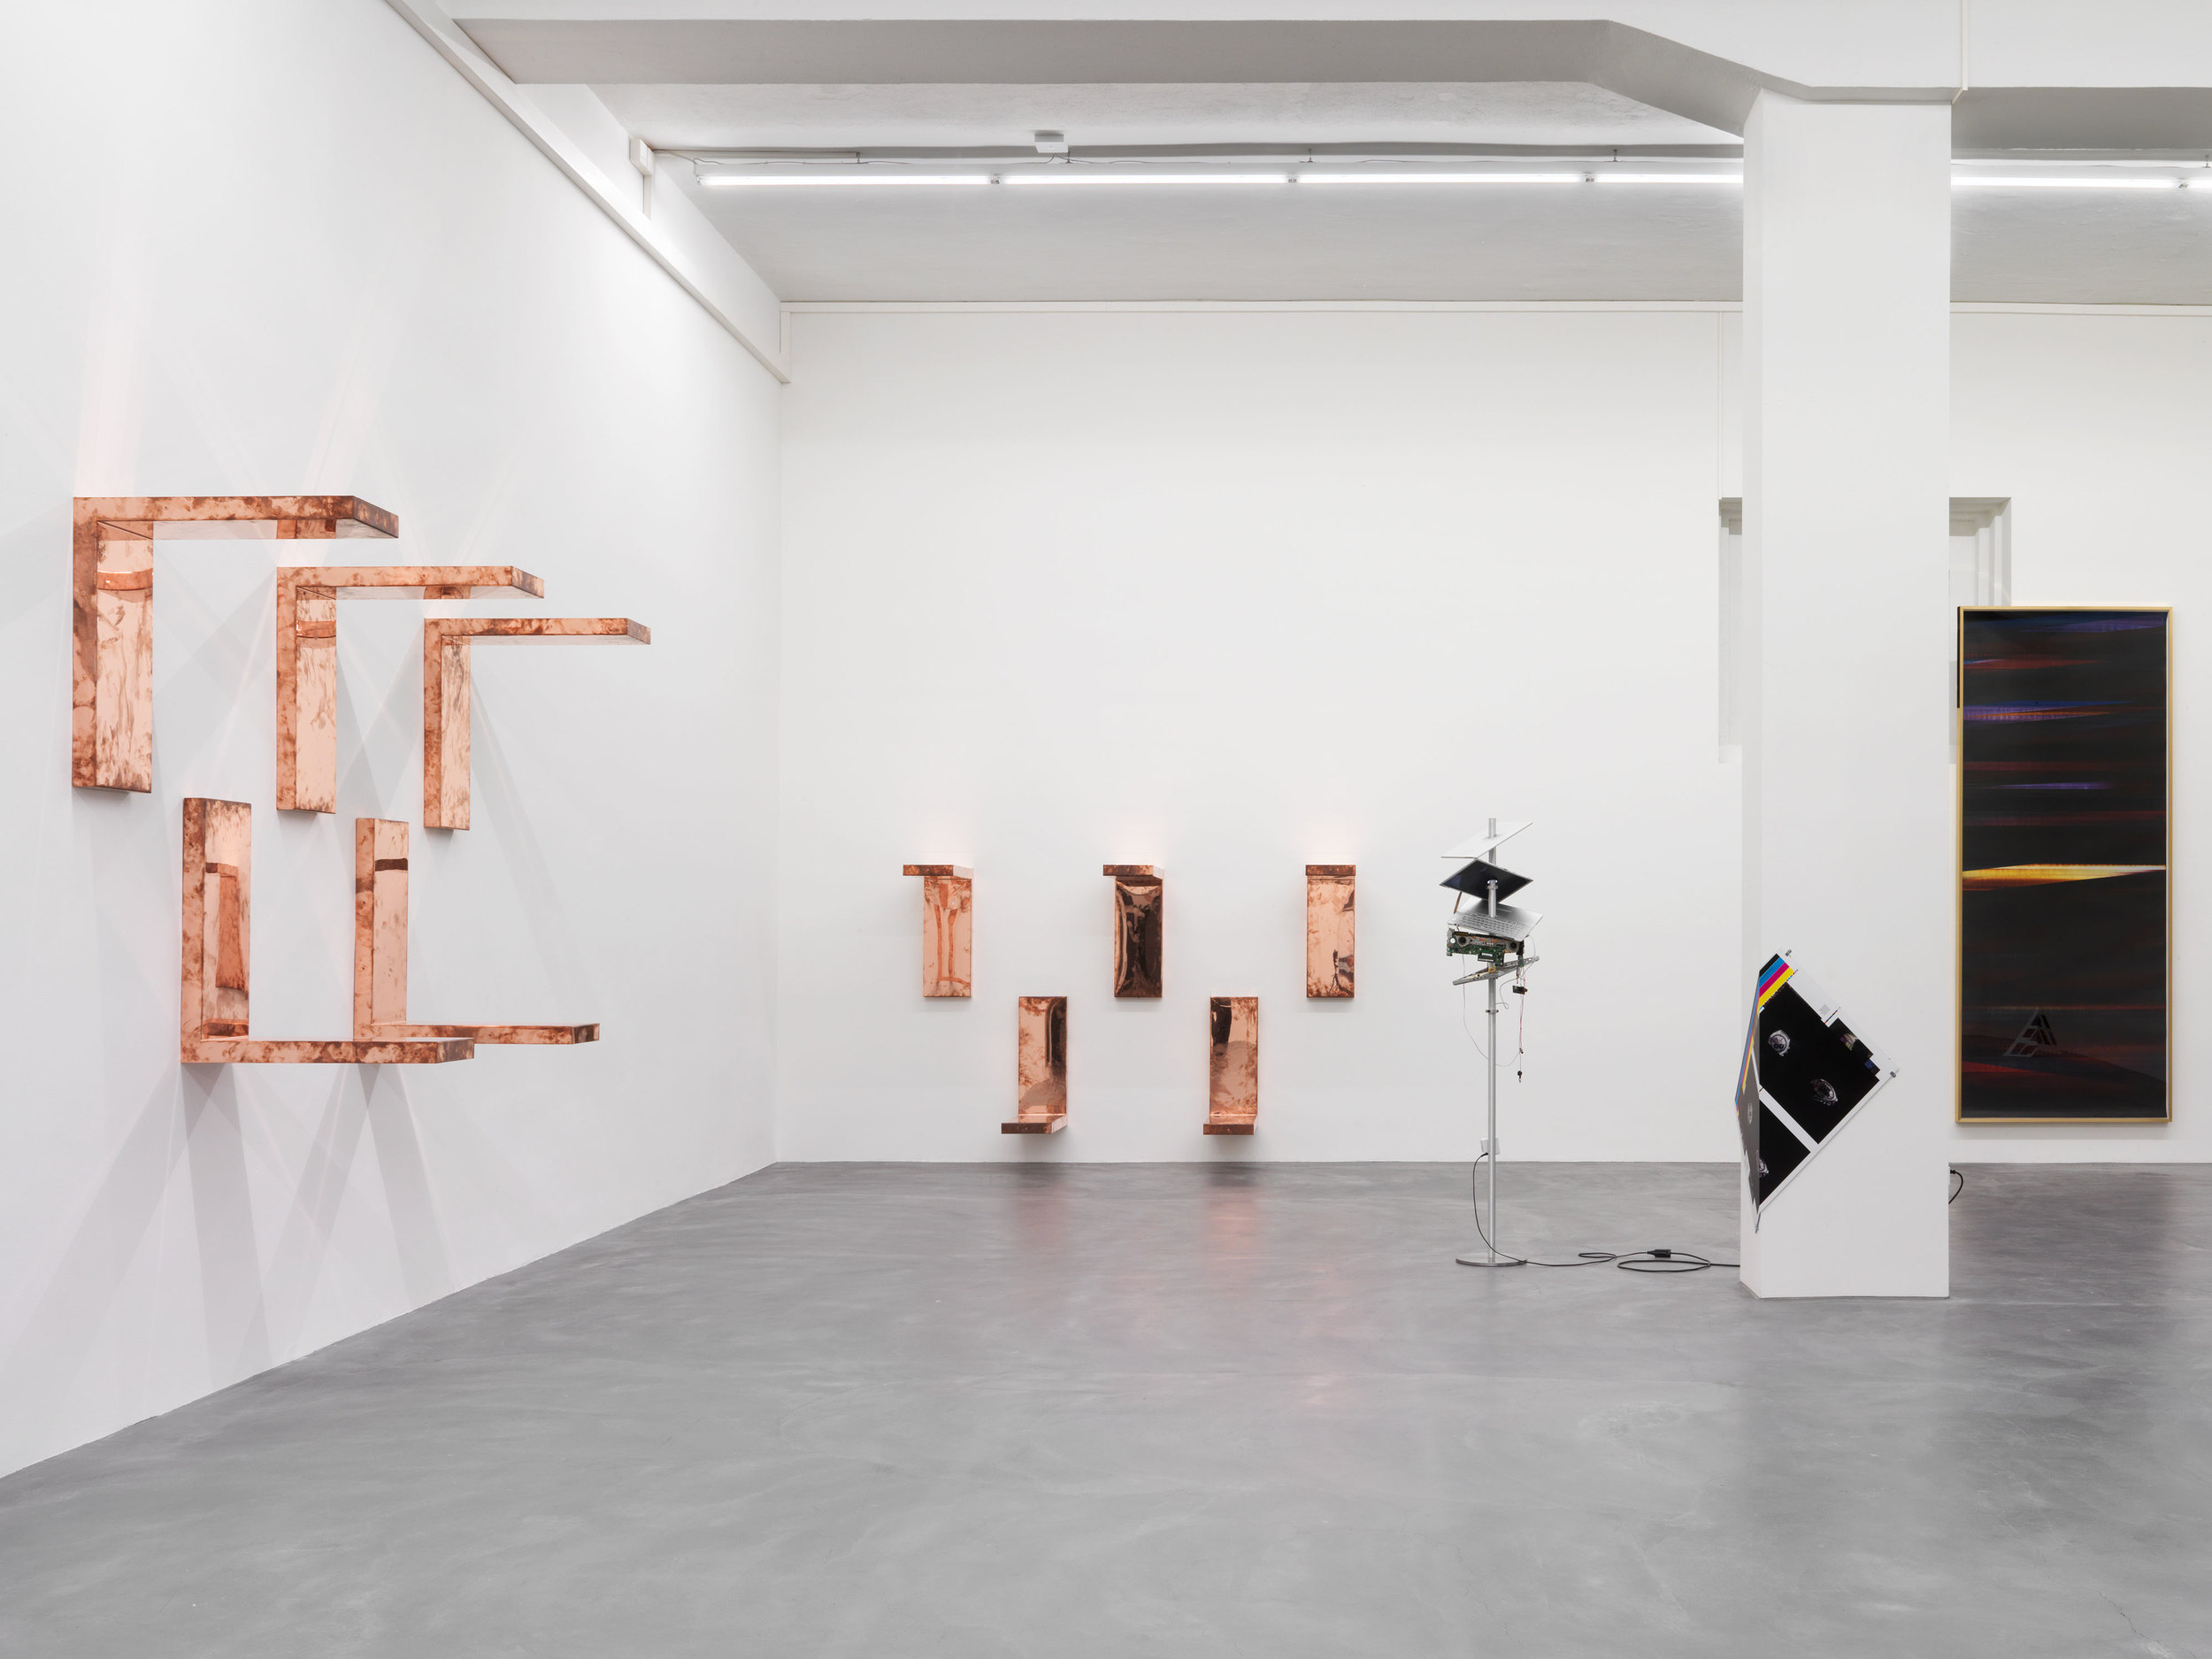   Automat   Galerie Eva Presenhuber, Zurich  2016 